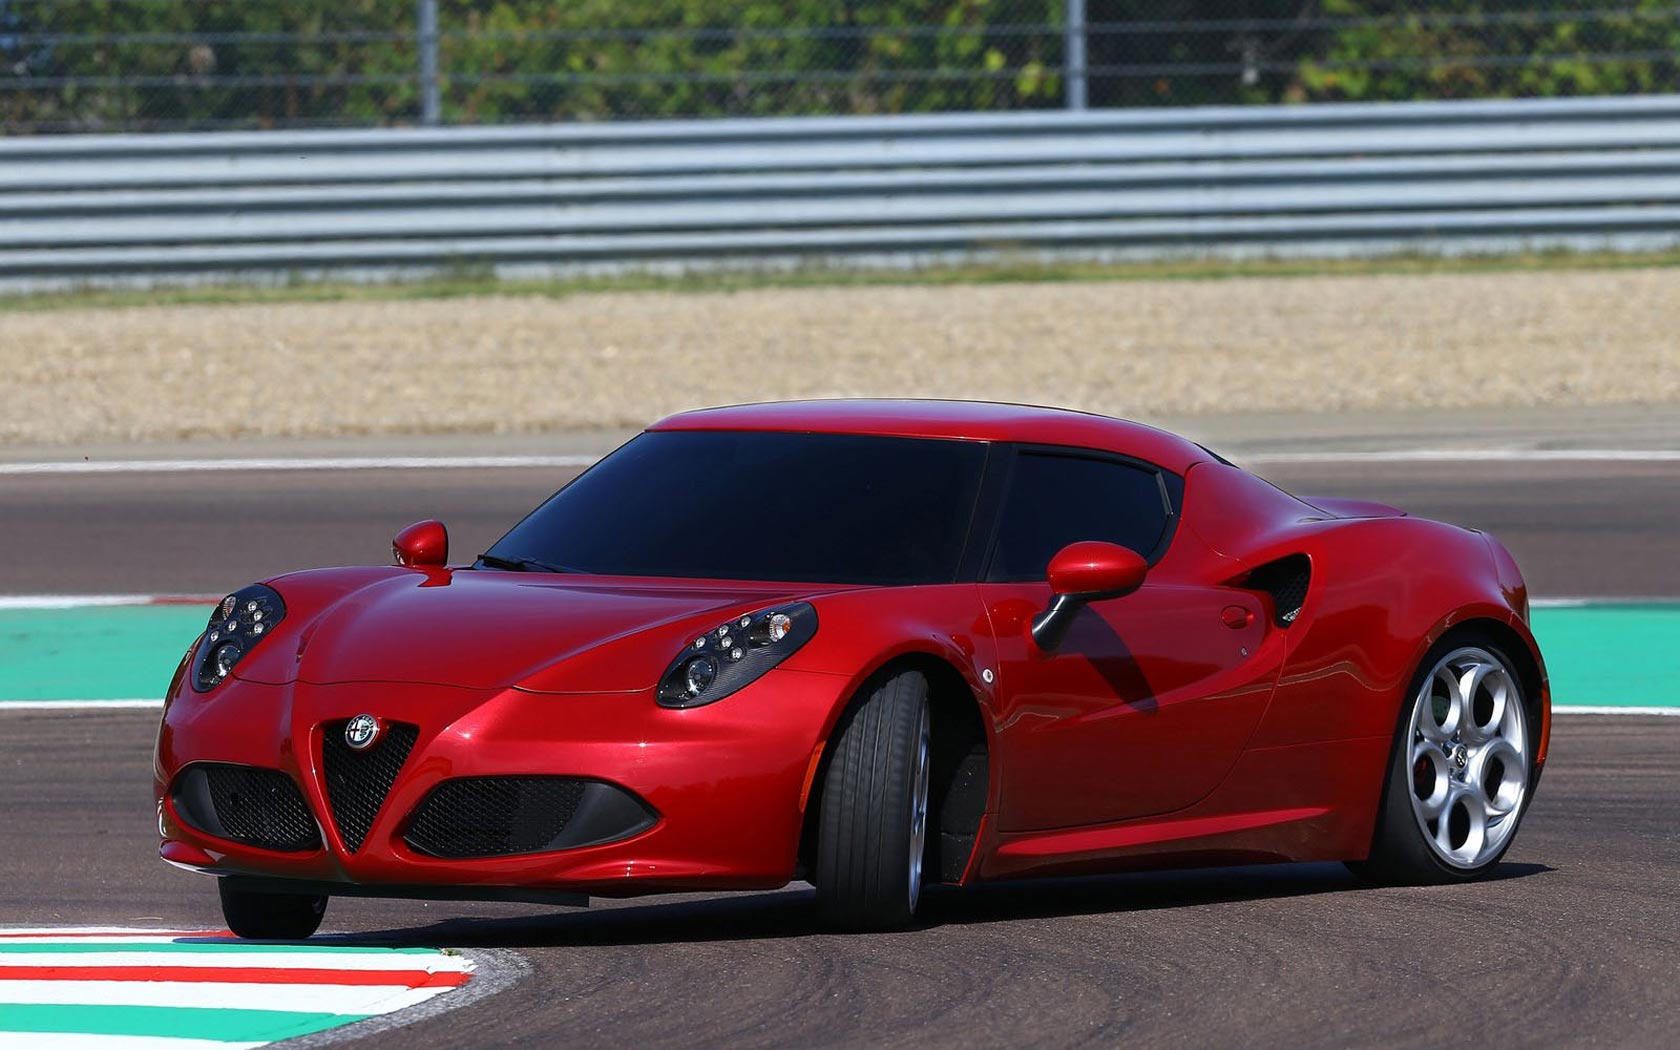 Alfa Romeo 4c 2013